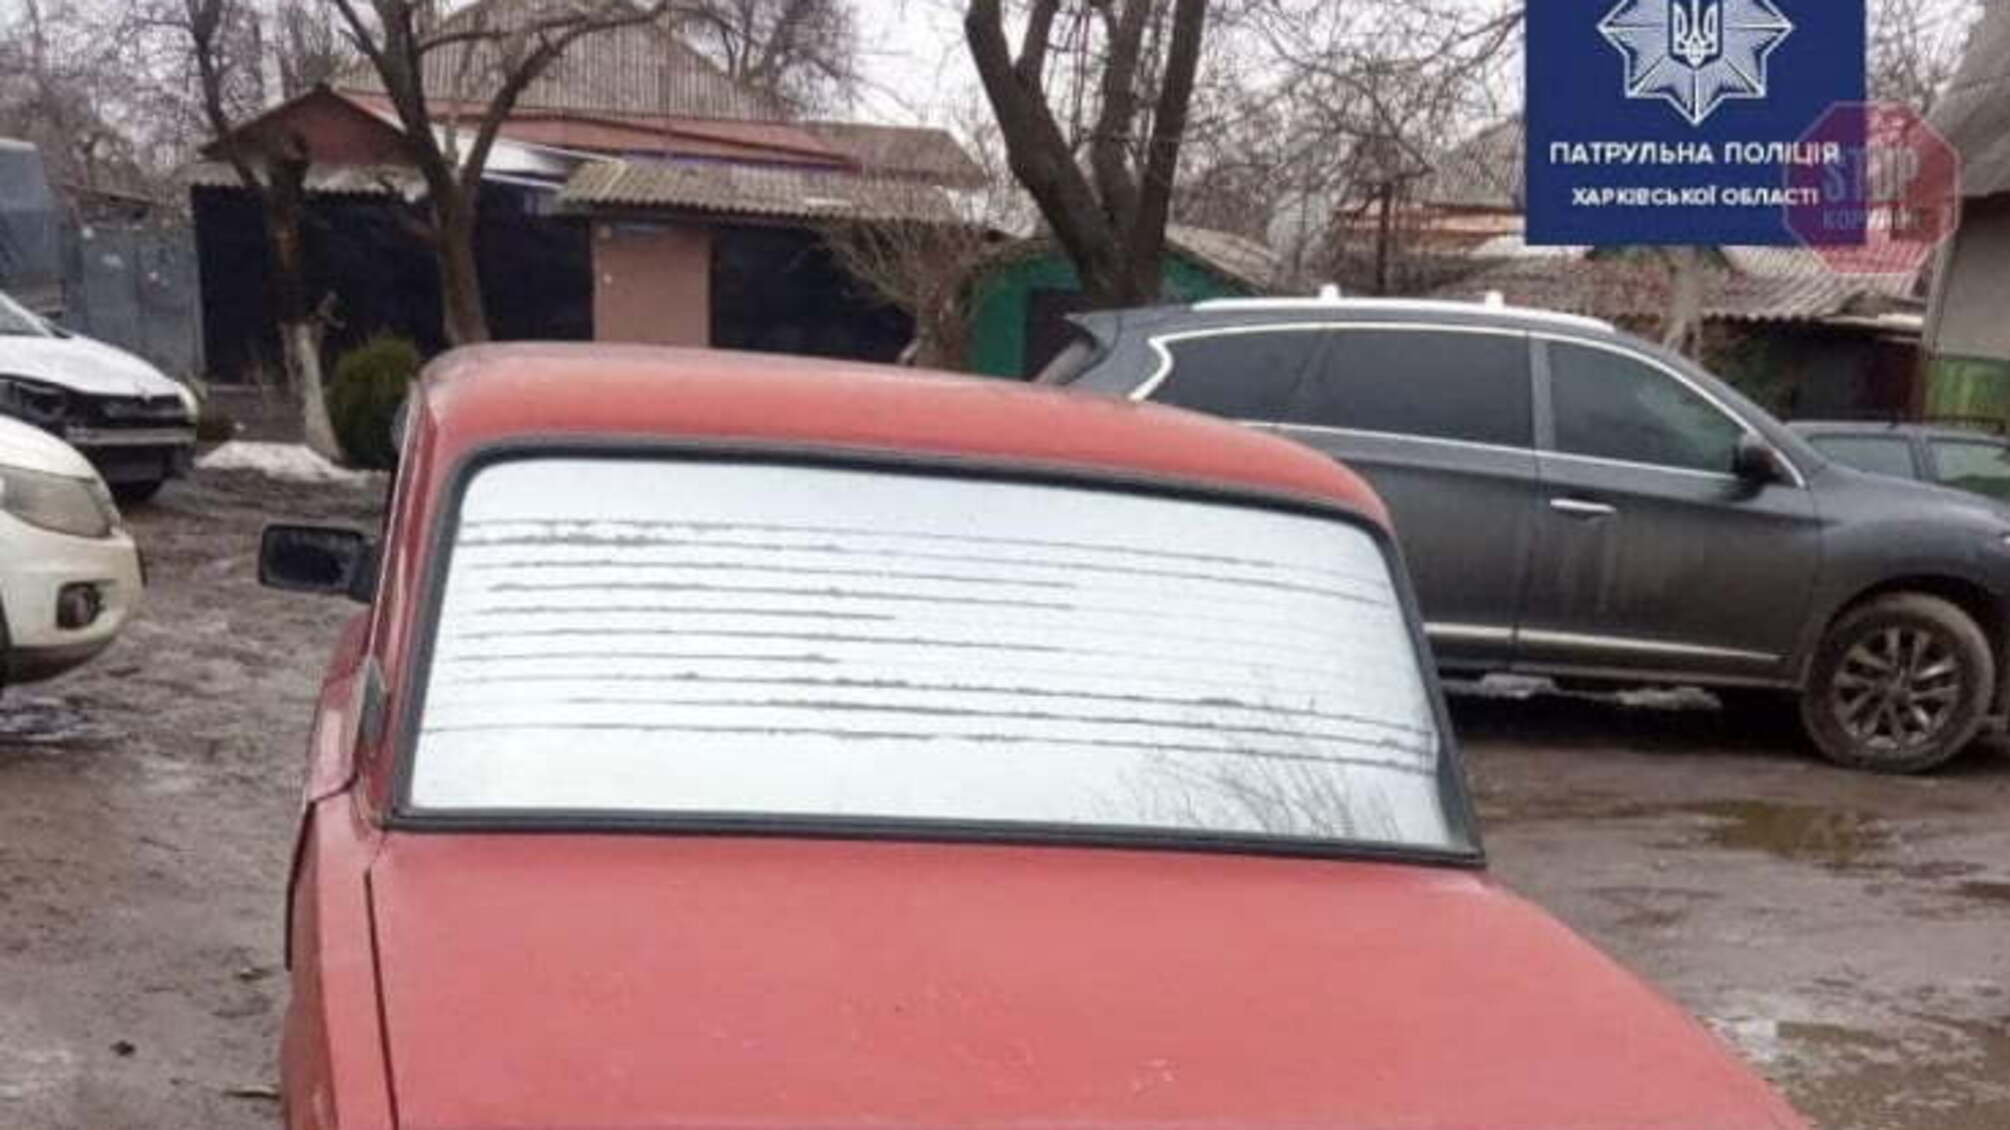 Новости Харькова: Полиция задержала пьяного водителя, который пытался дать взятку (фото)